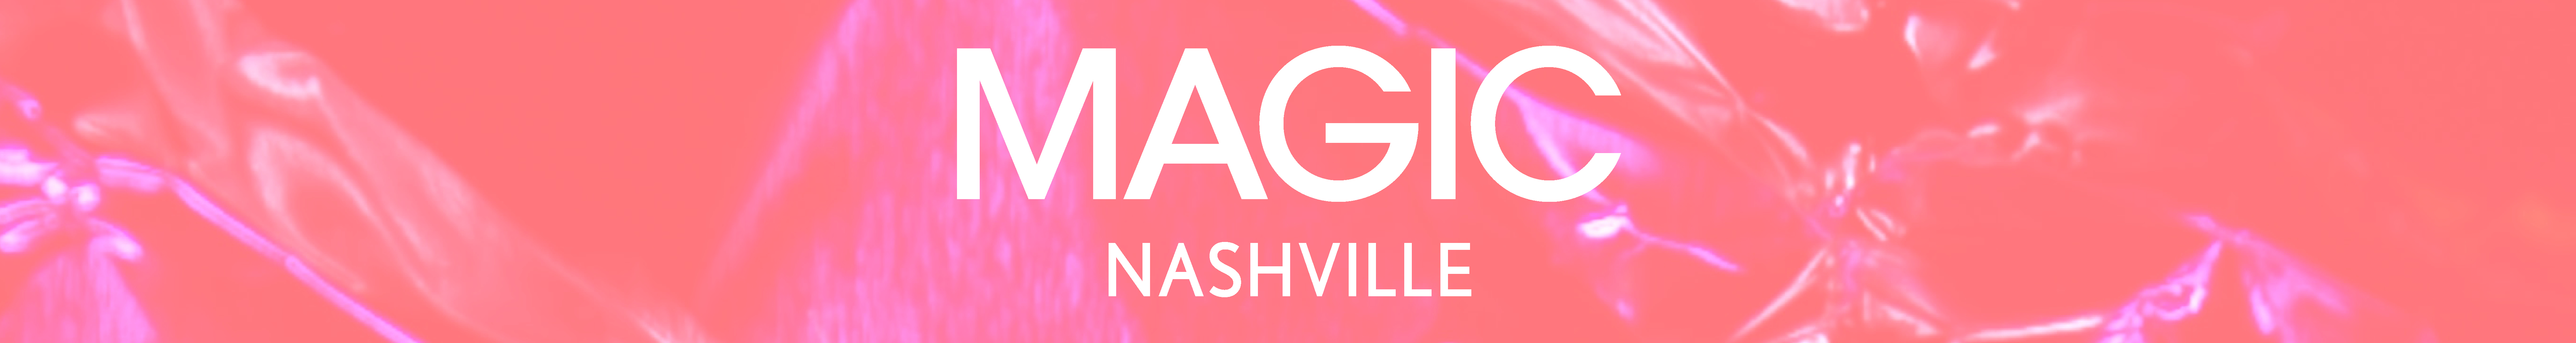 MAGIC Nashville Fashion Tradeshow